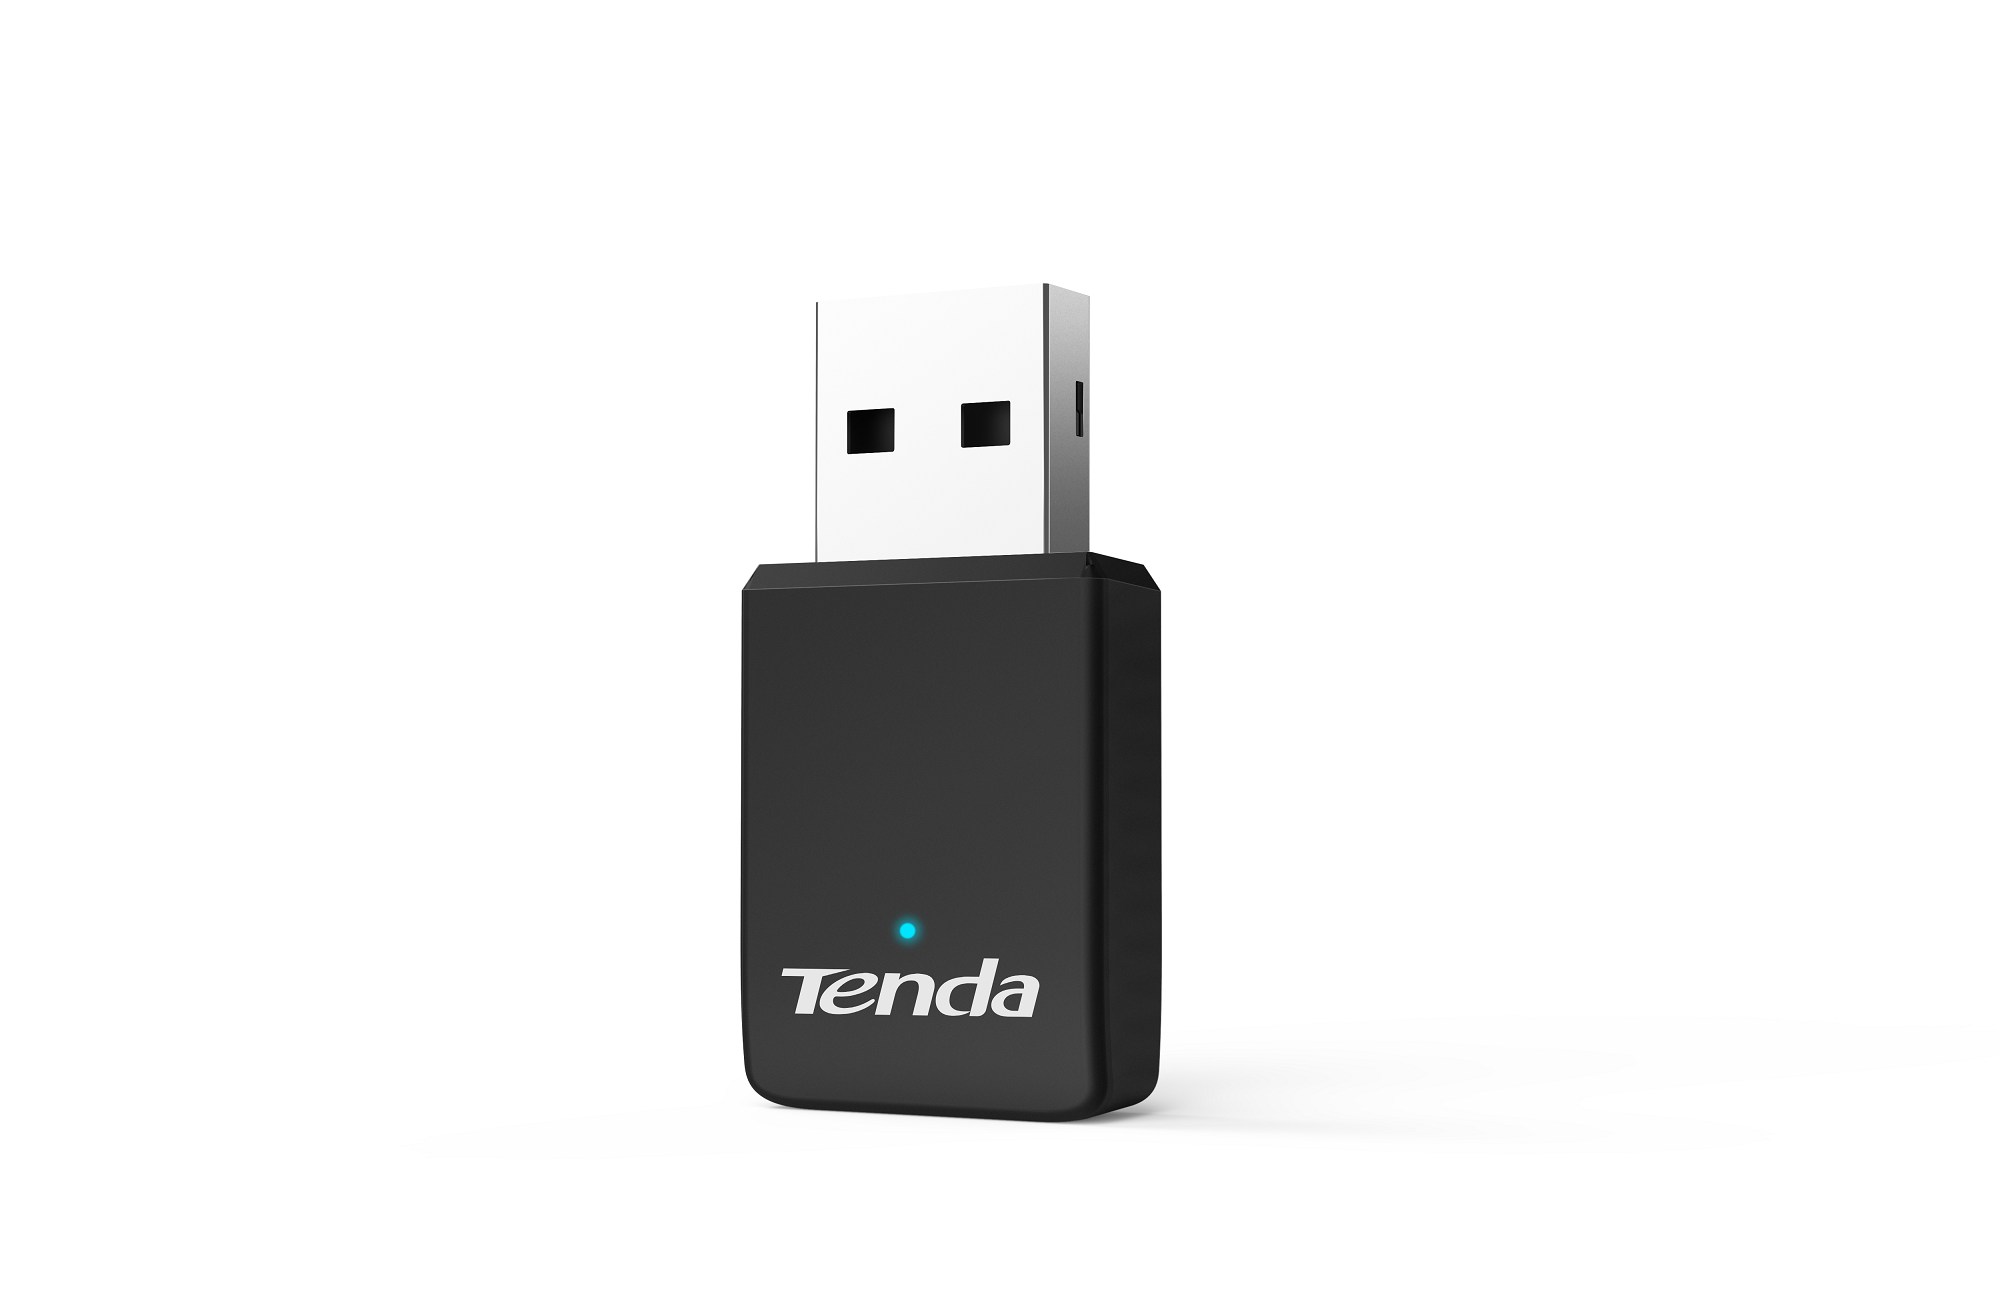 Tenda - all for better networking